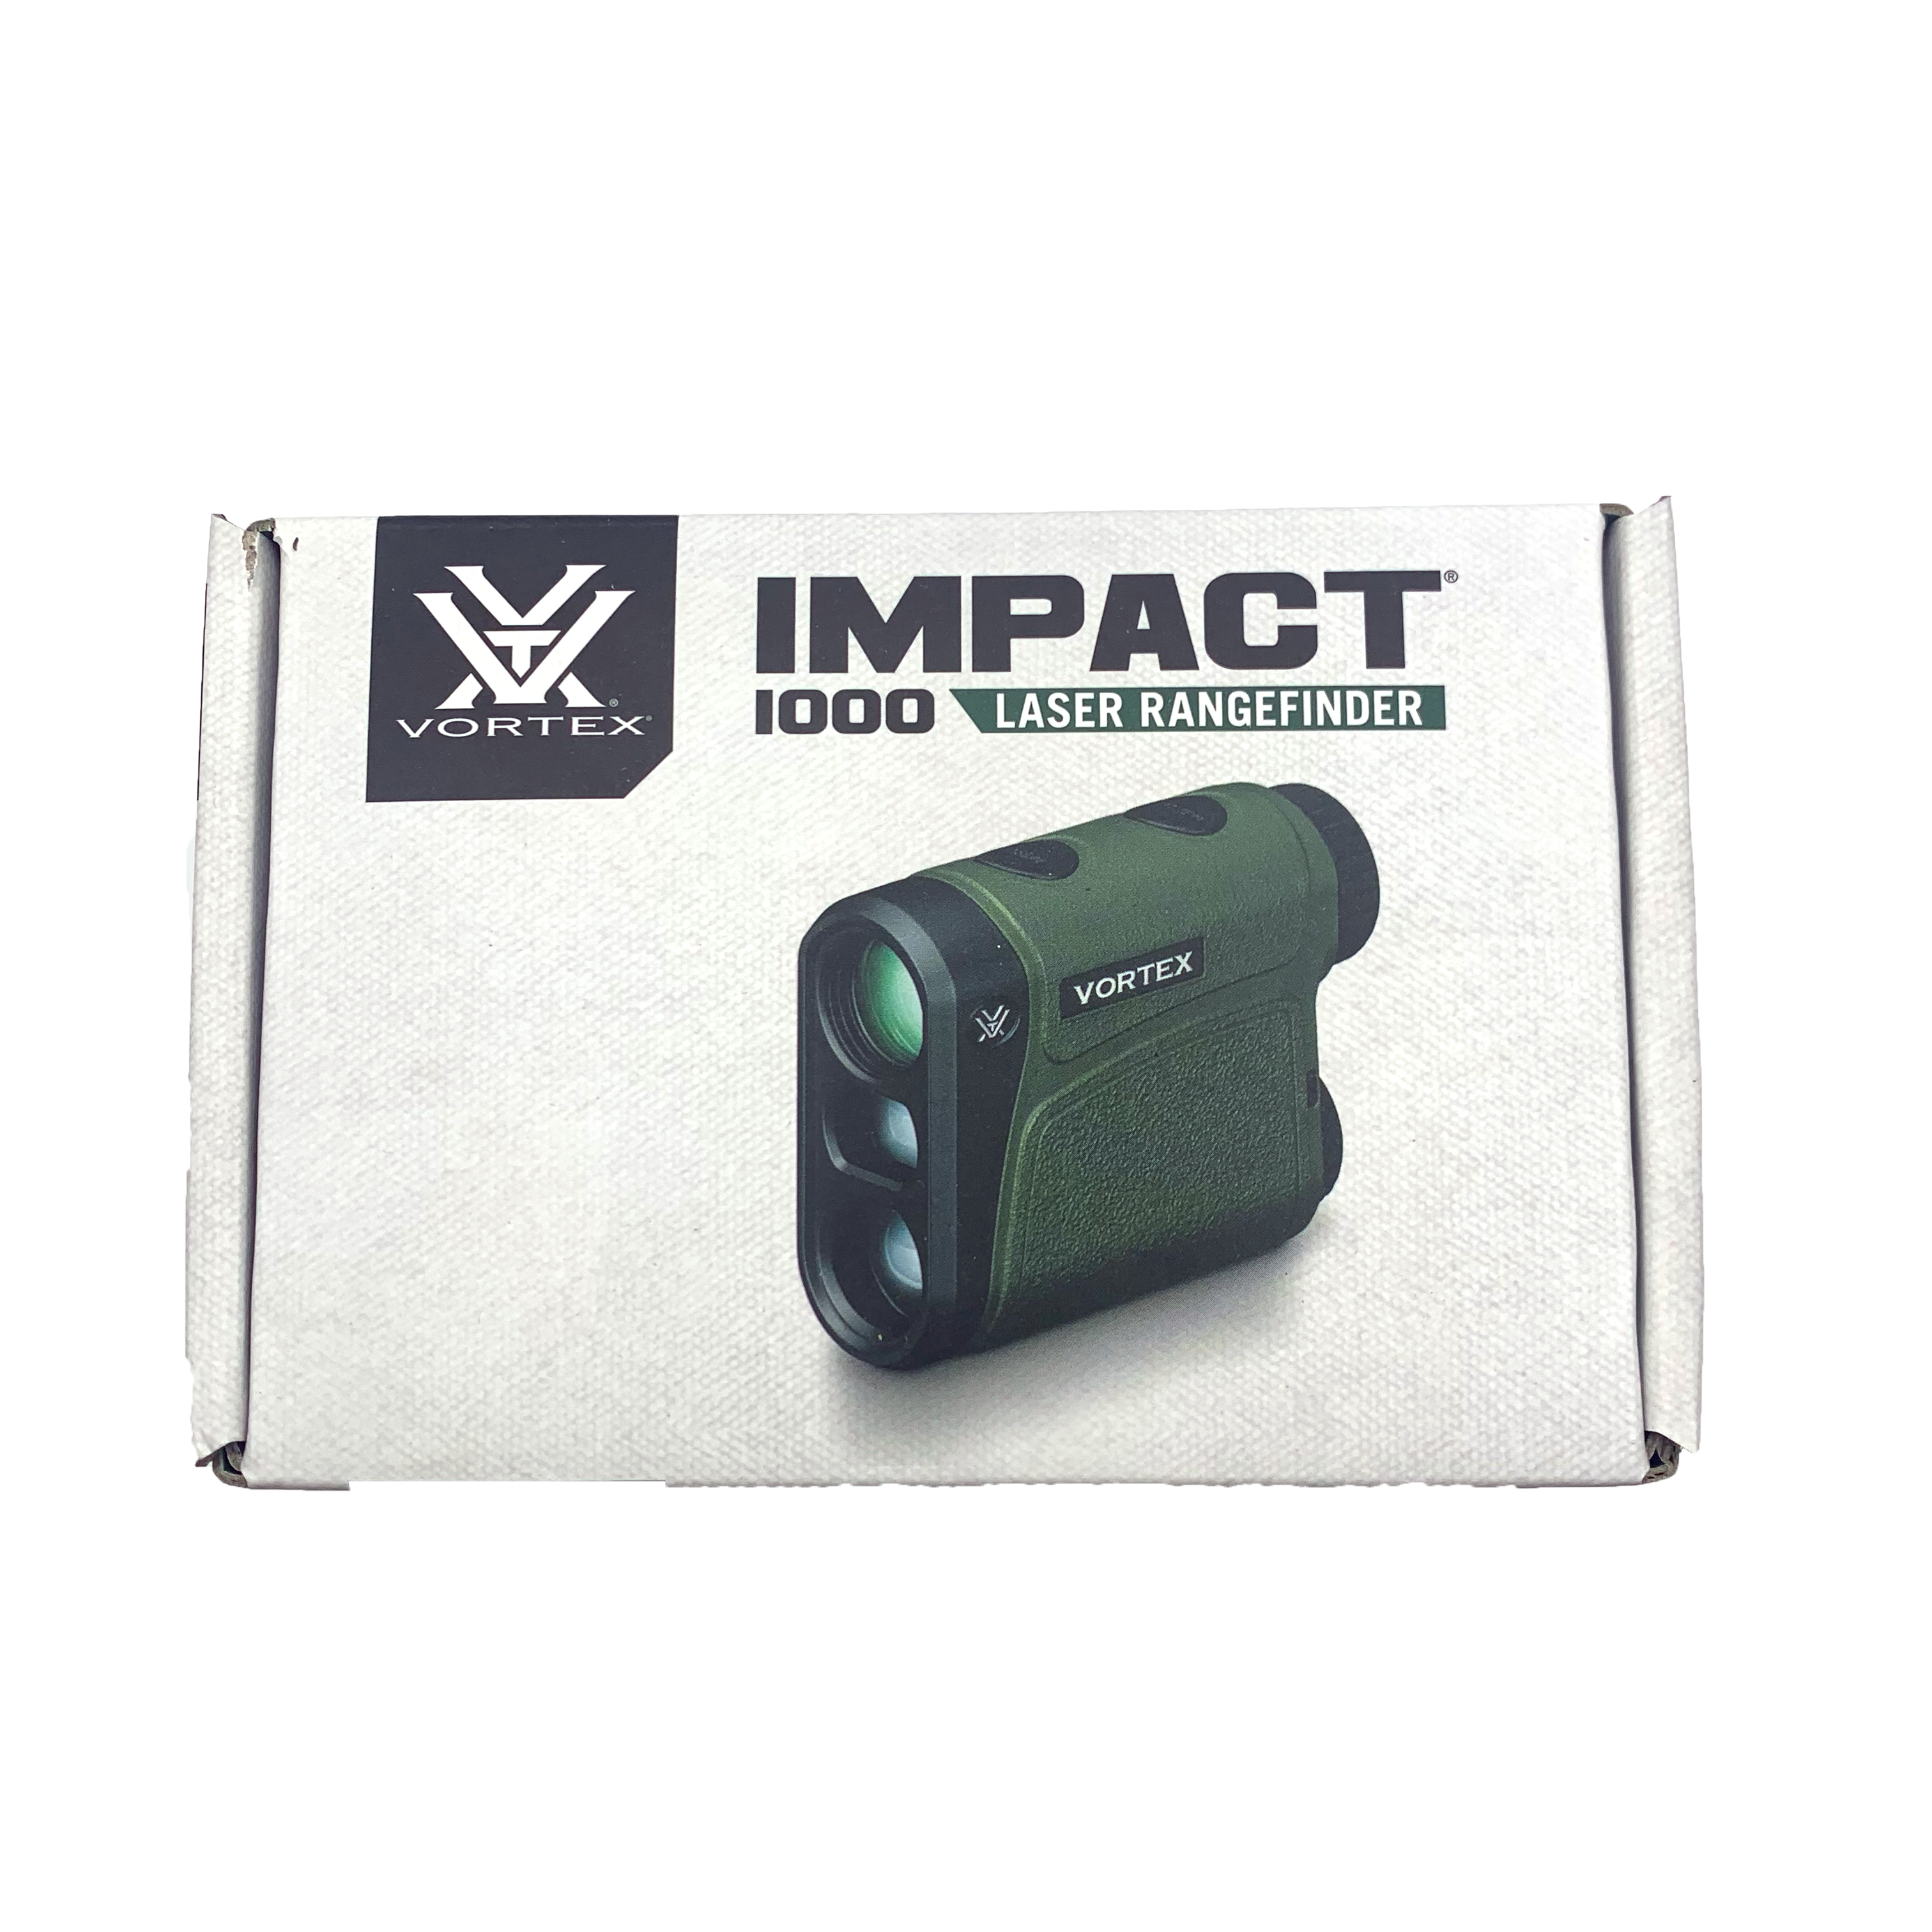 Vortex Impact 1000 Laser Range finder - Brand New - RPI Supplies